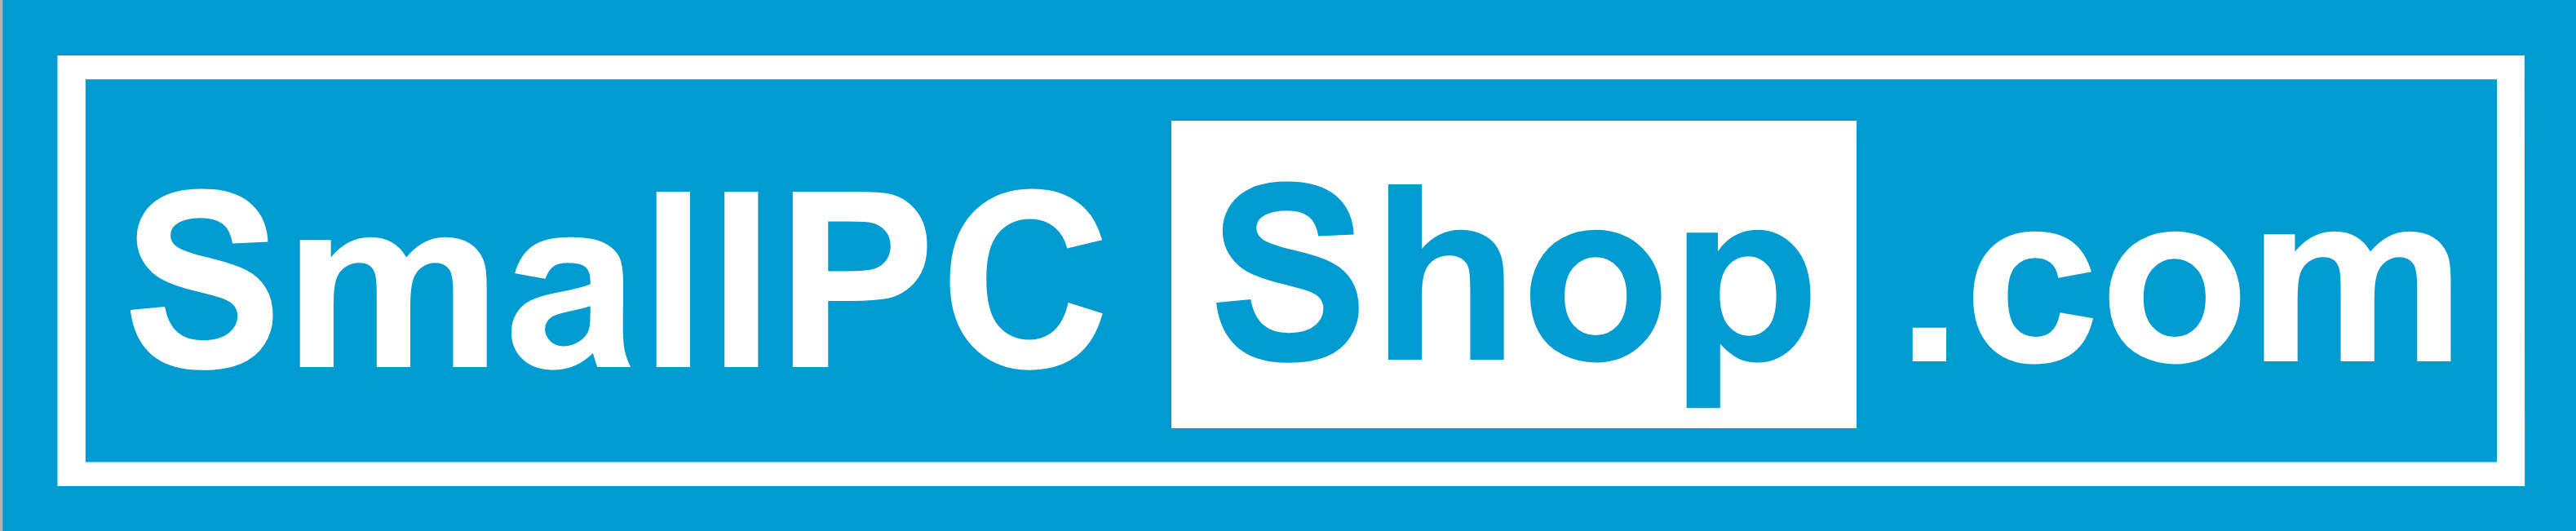 Small PC Shop